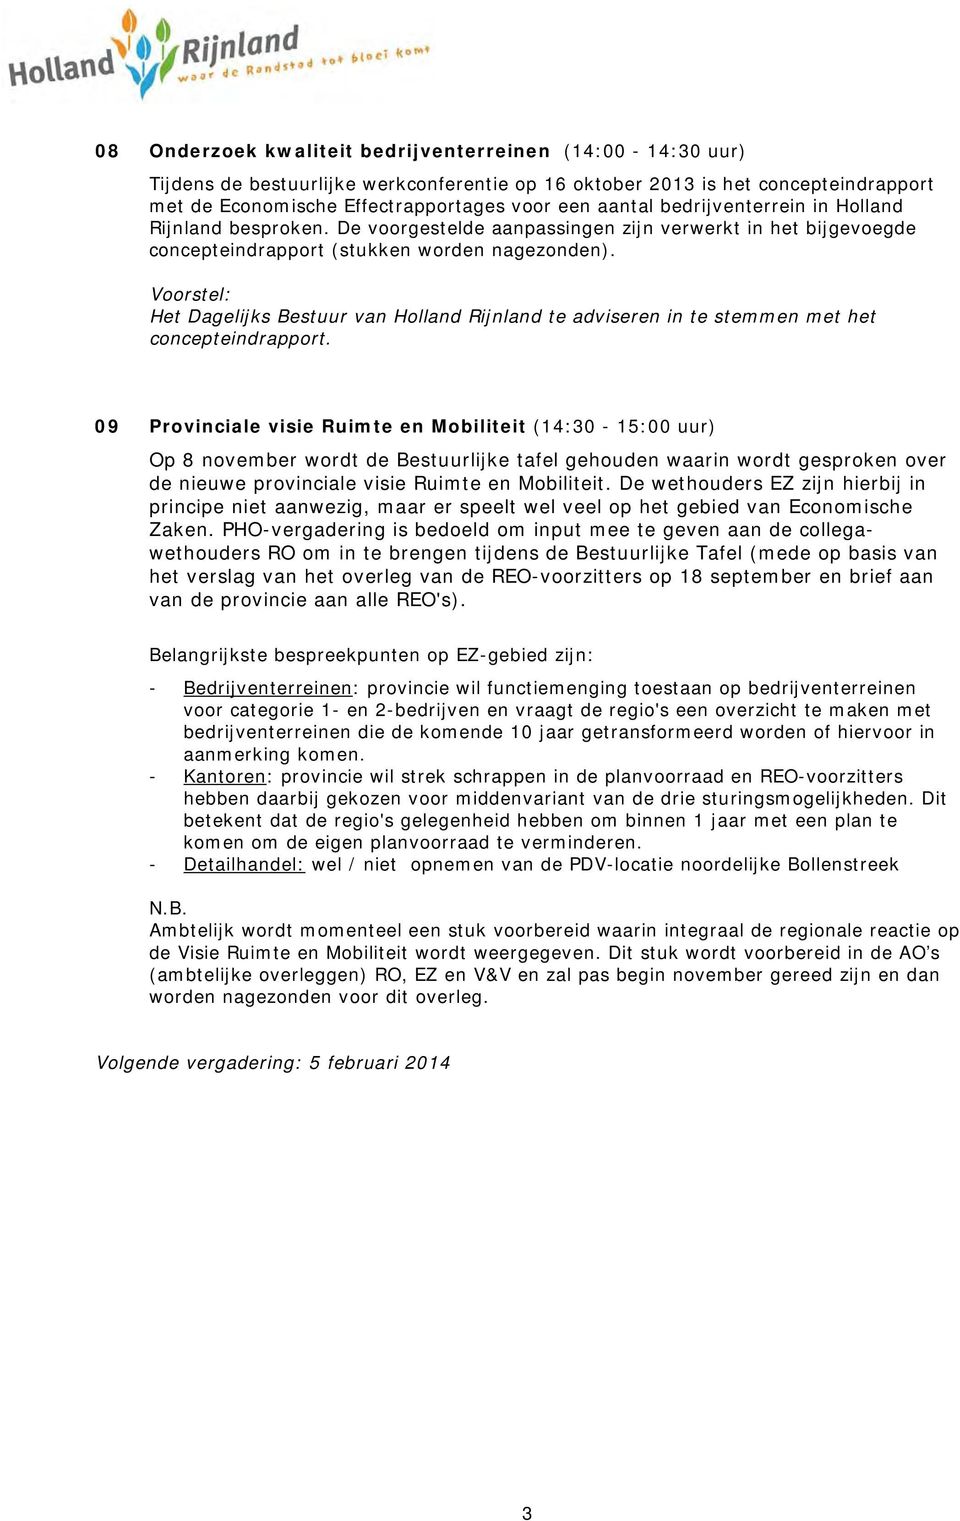 Voorstel: Het Dagelijks Bestuur van Holland Rijnland te adviseren in te stemmen met het concepteindrapport.